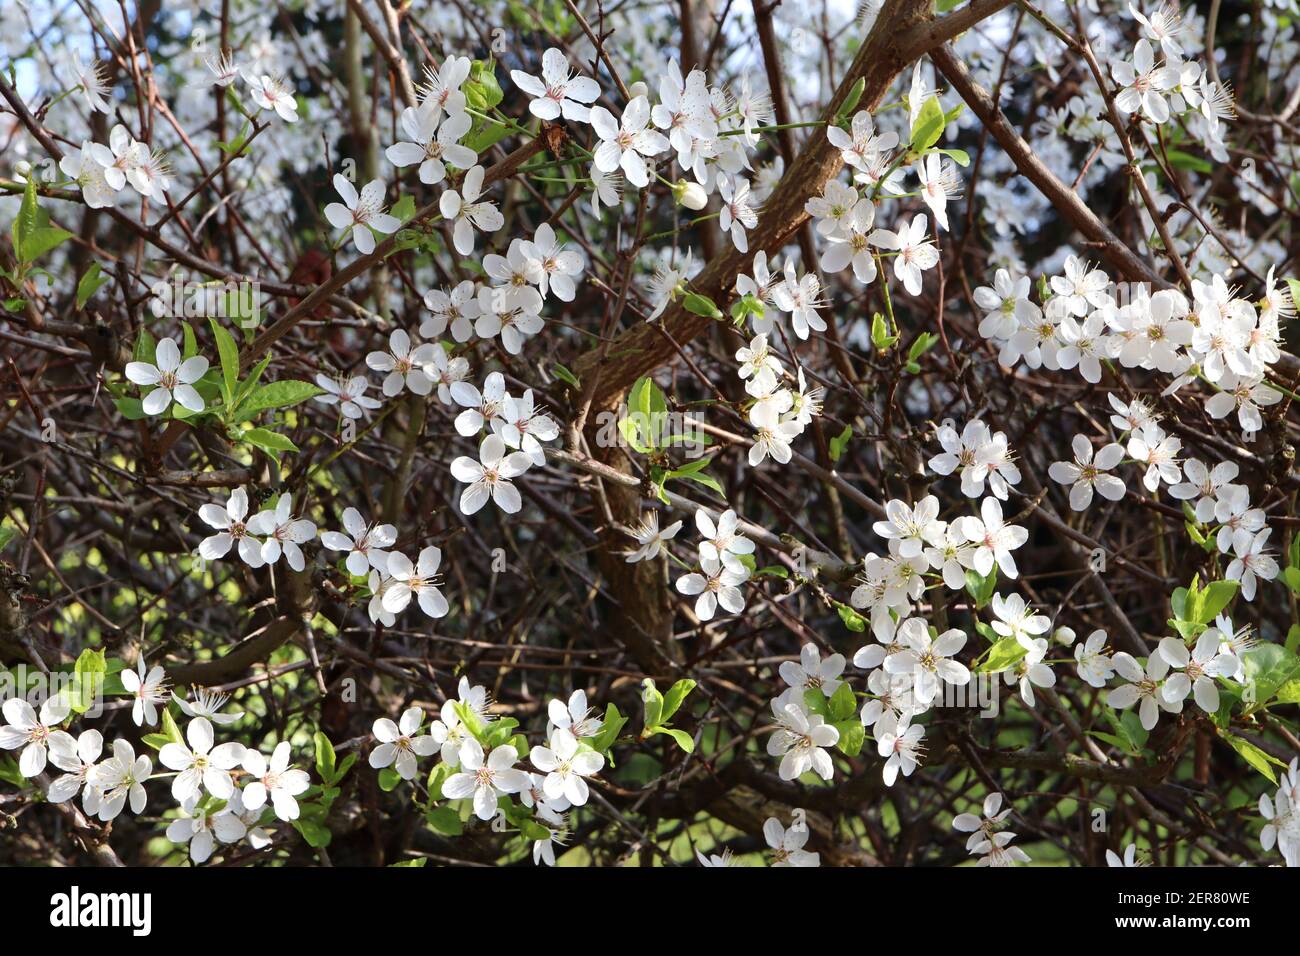 Prunus cerasifera prugna di ciliegia – piccoli fiori bianchi a forma di ciotola con molte stampelle, gambi di fiori verdi, foglie verdi, febbraio, Inghilterra, REGNO UNITO Foto Stock